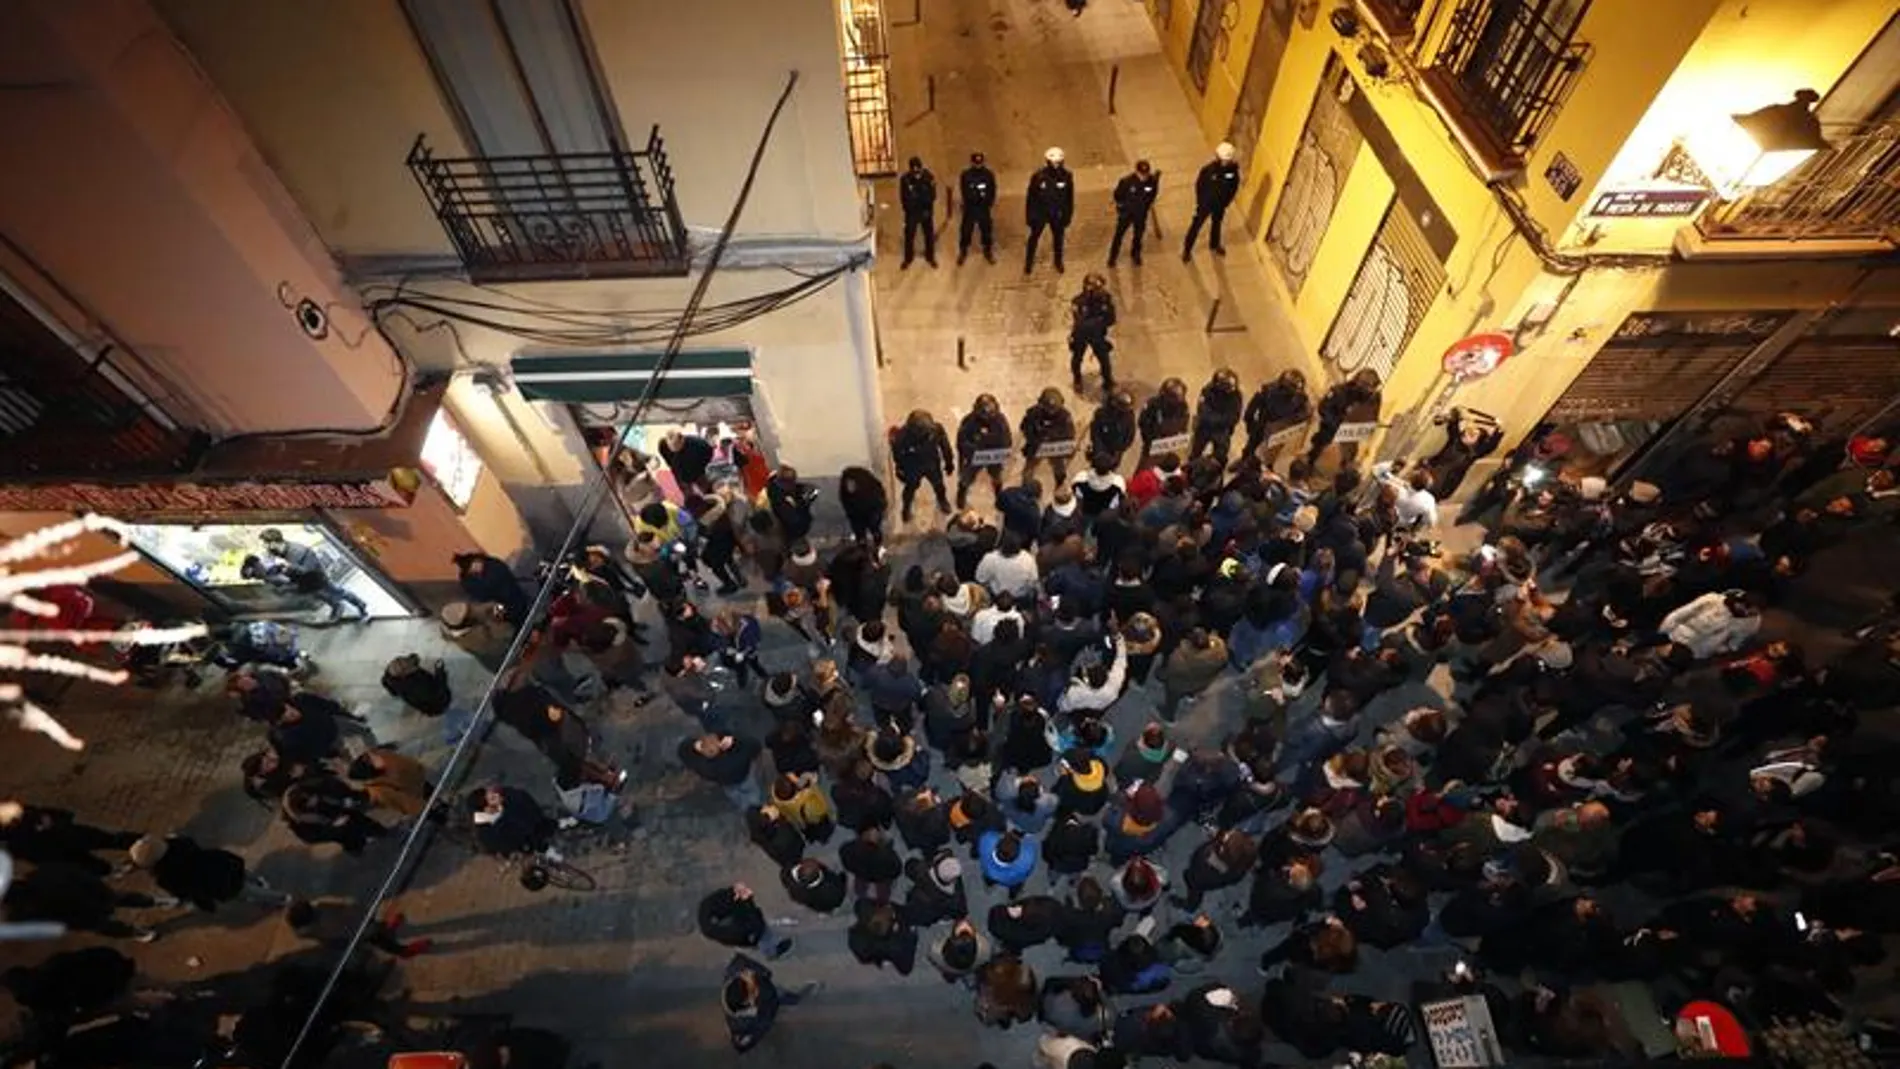 Policías antidisturbios en la calle Mesón de Paredes con la calle del Oso